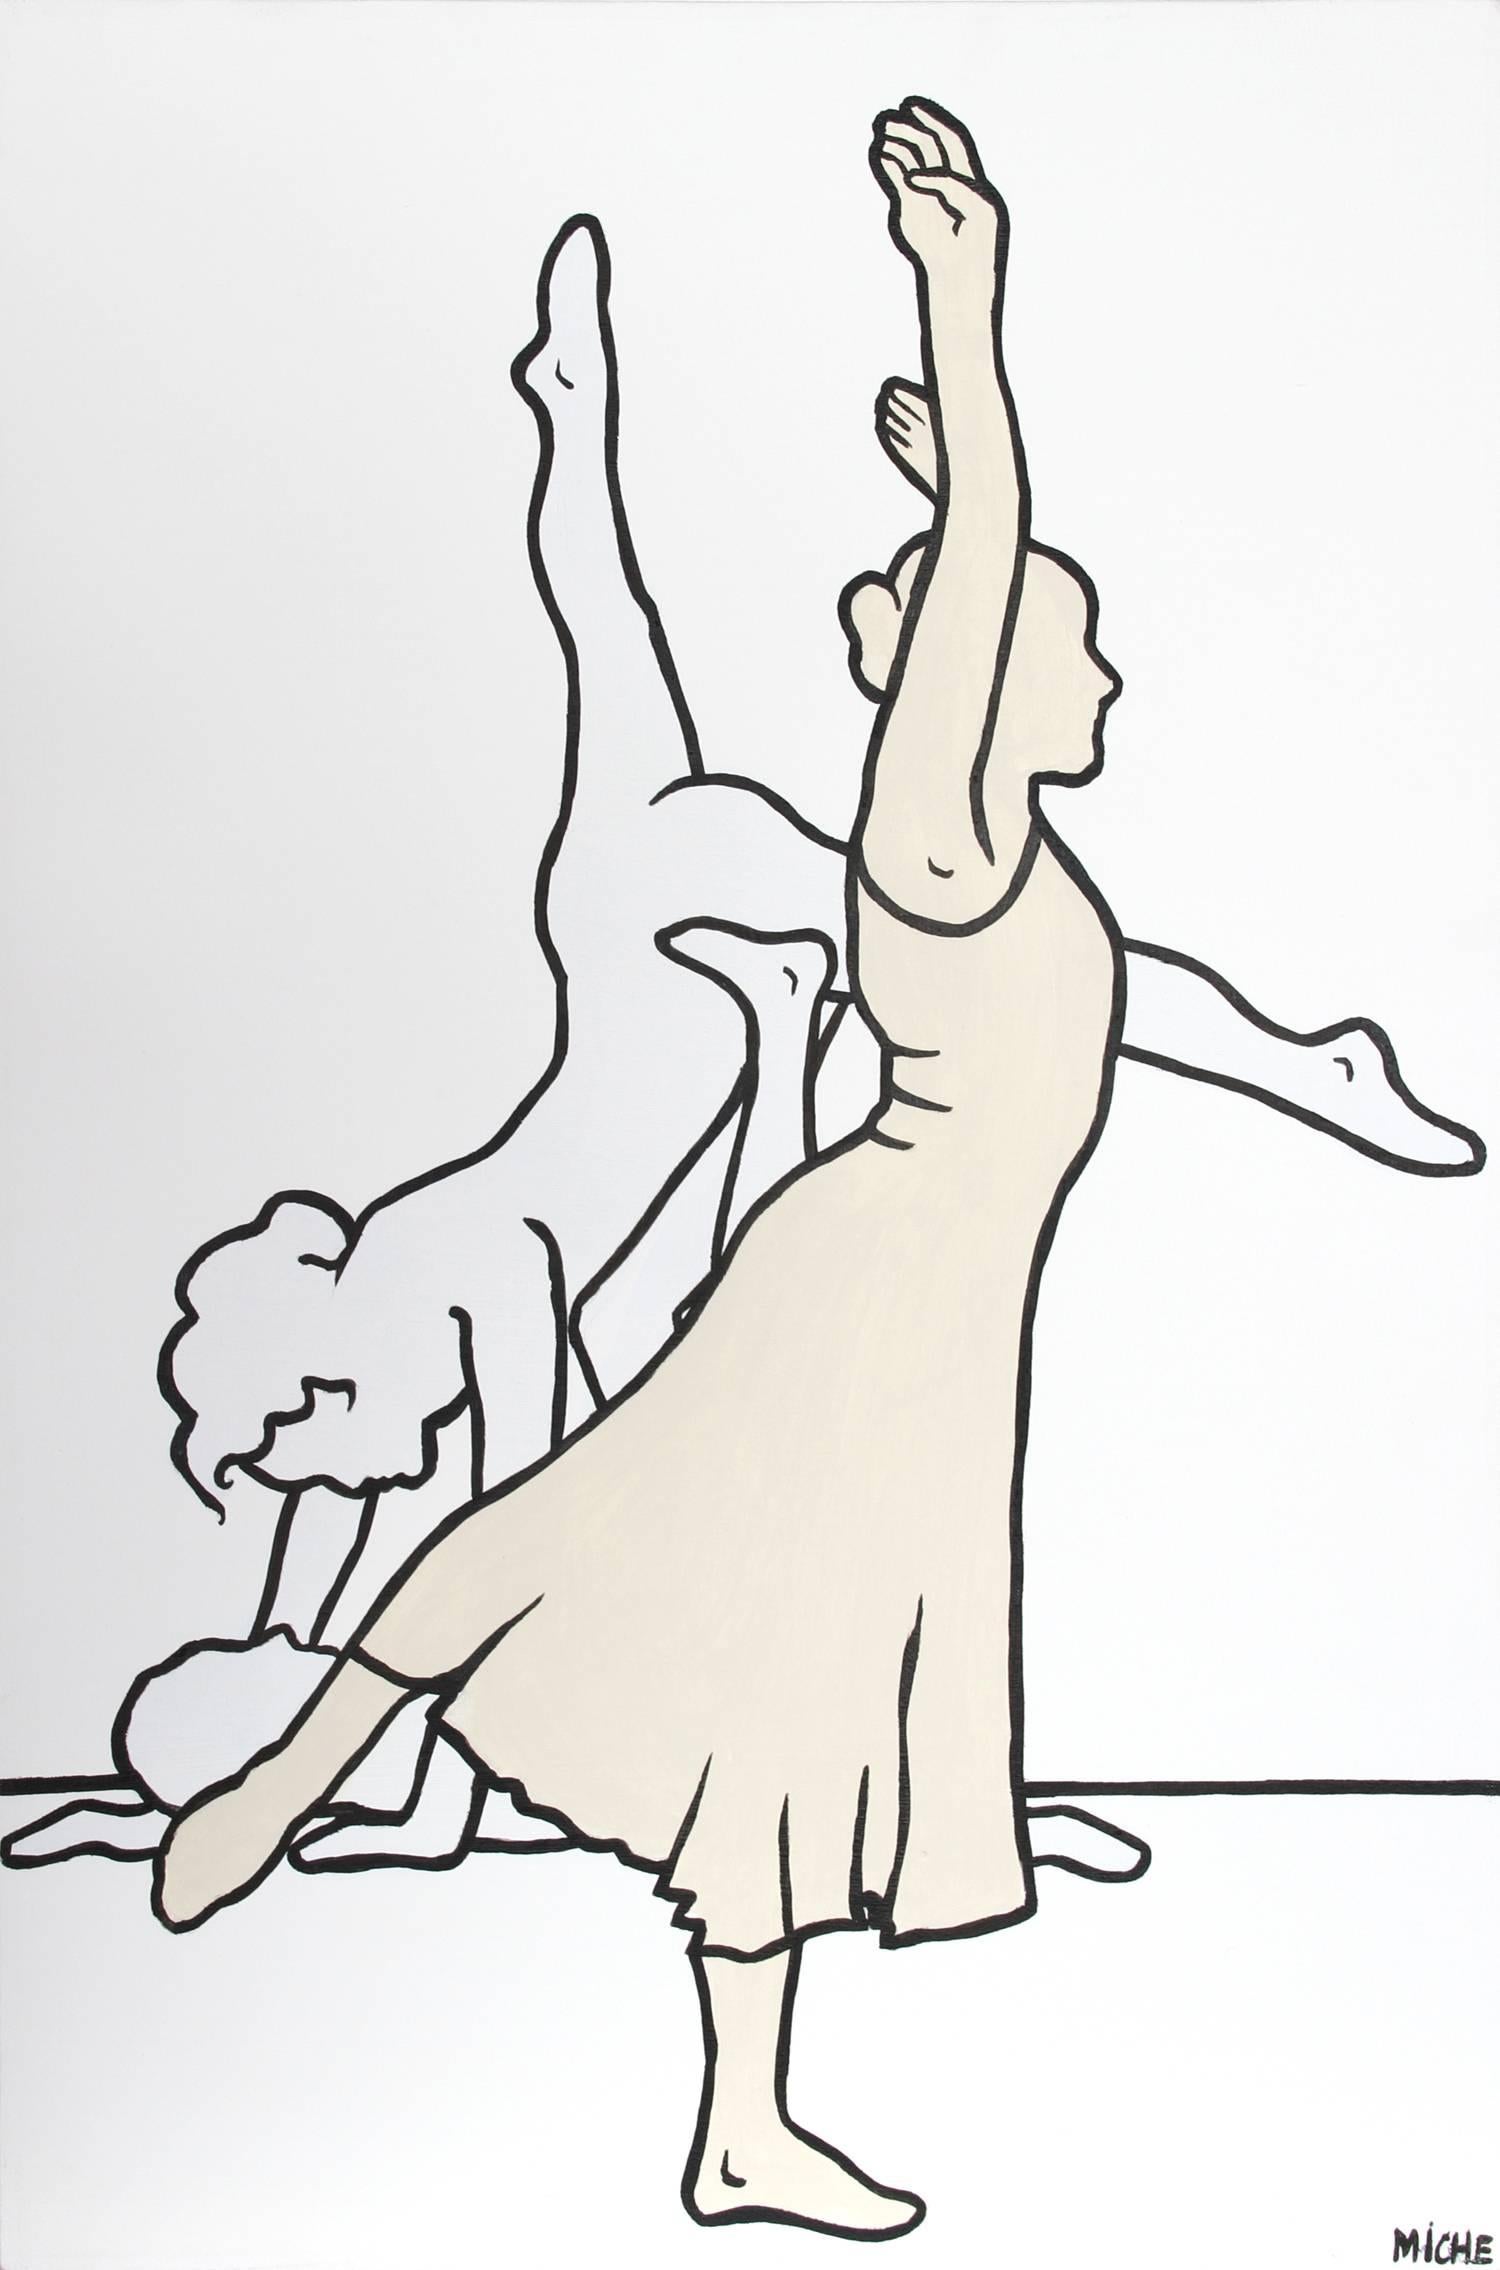 Künstler: Miche Watkins (britisch/südafrikanisch, geb. 1953)
Titel: Tänzer 5
Jahr: 2010
Medium: Acryl auf Leinwand, signiert v.l.n.r.
Größe: 35 Zoll x 23,5 Zoll (88,9 cm x 59,69 cm)